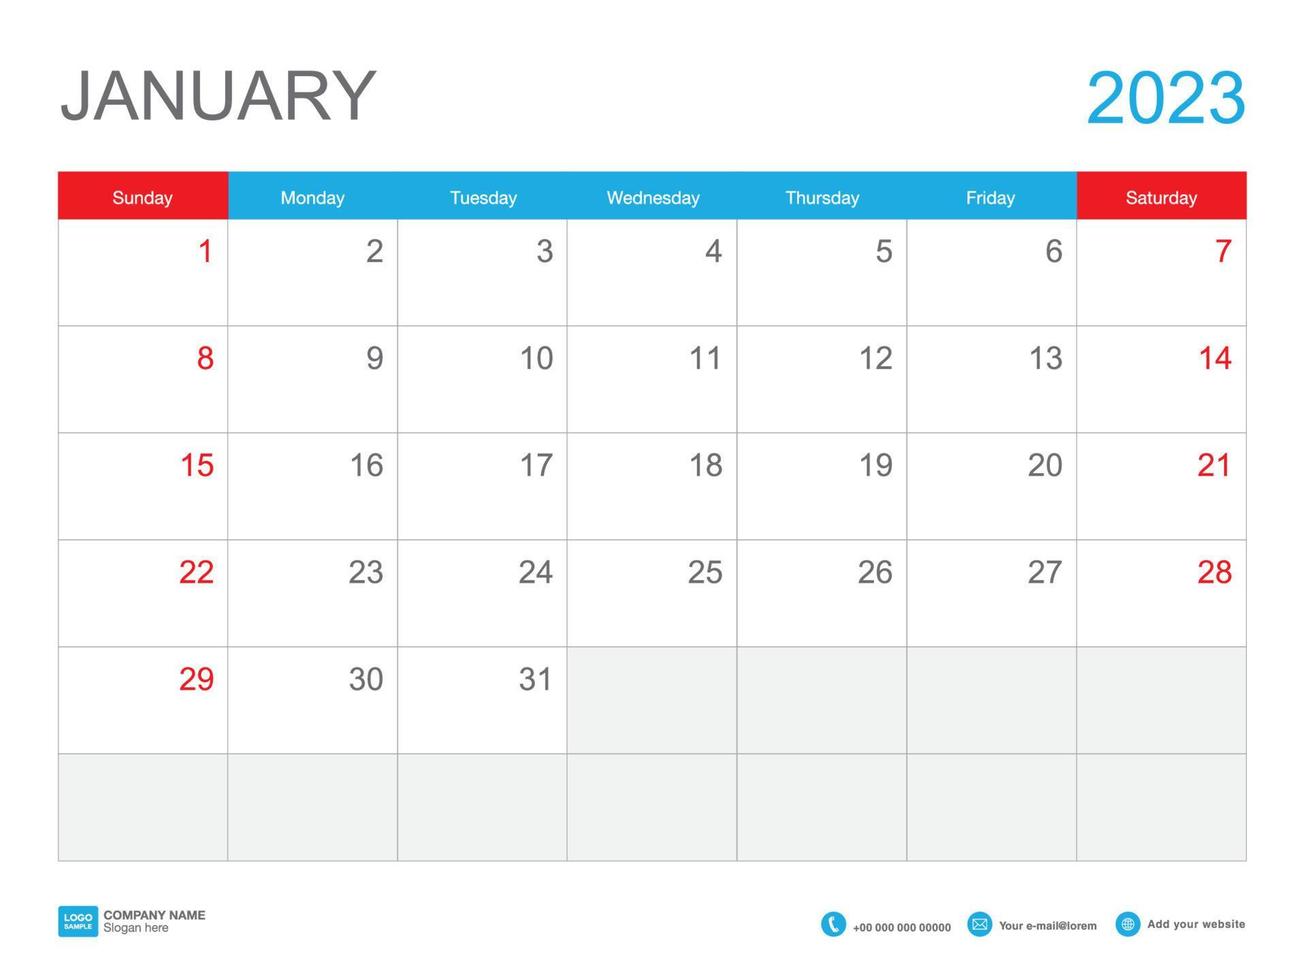 Januar 2023 Vorlagenkalender 2023 Design, Tischkalender 2023 Vorlage, Planer einfach, Woche beginnt Sonntag, Schreibwaren, Wandkalender, Druck, Werbung, Vektorillustration vektor